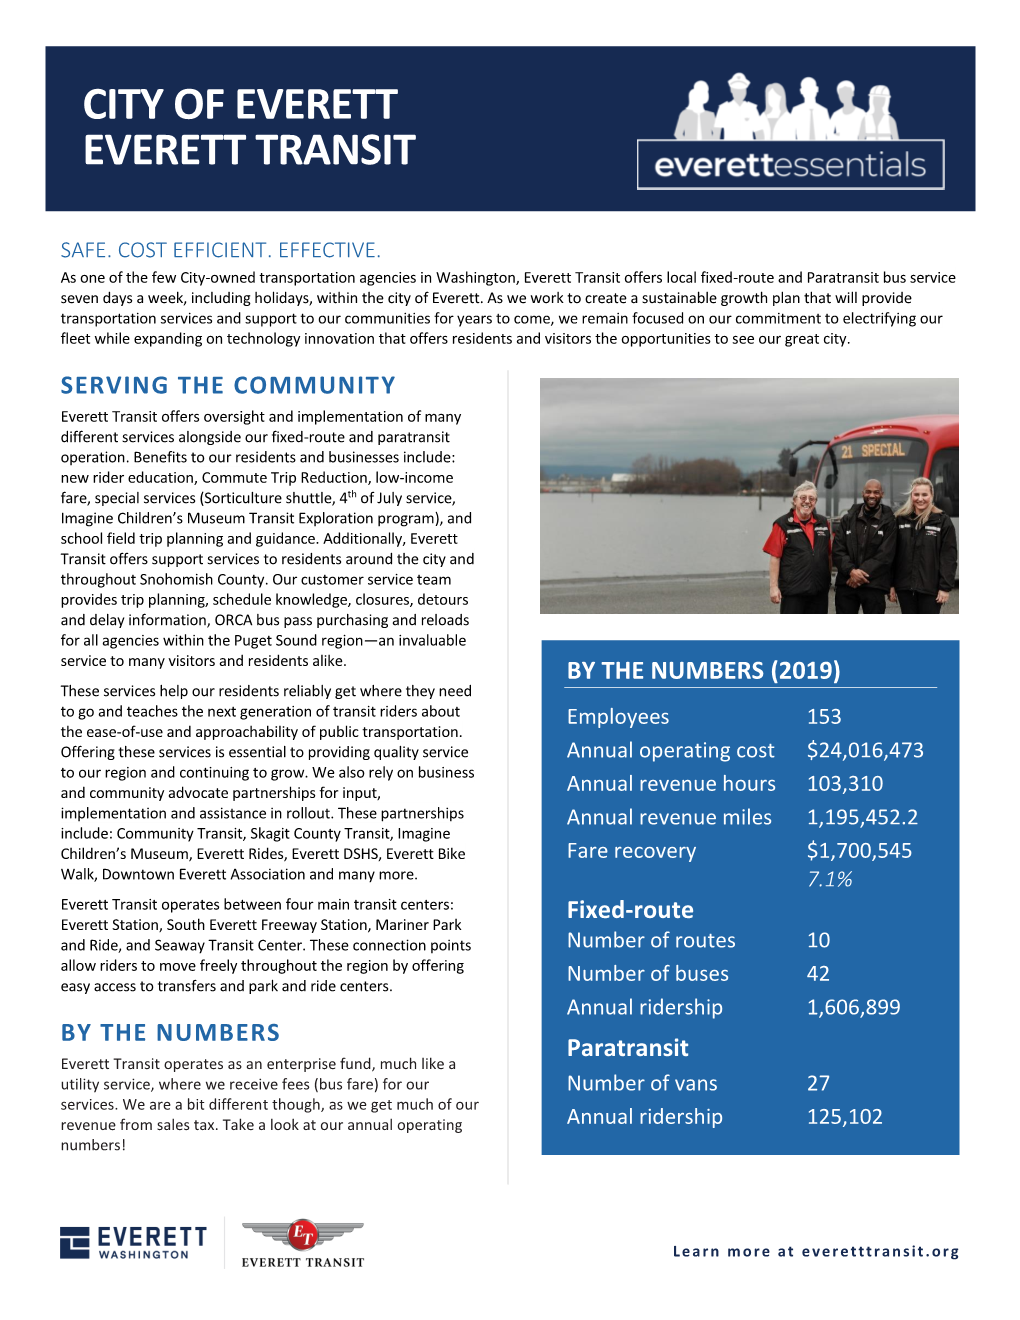 City of Everett Everett Transit